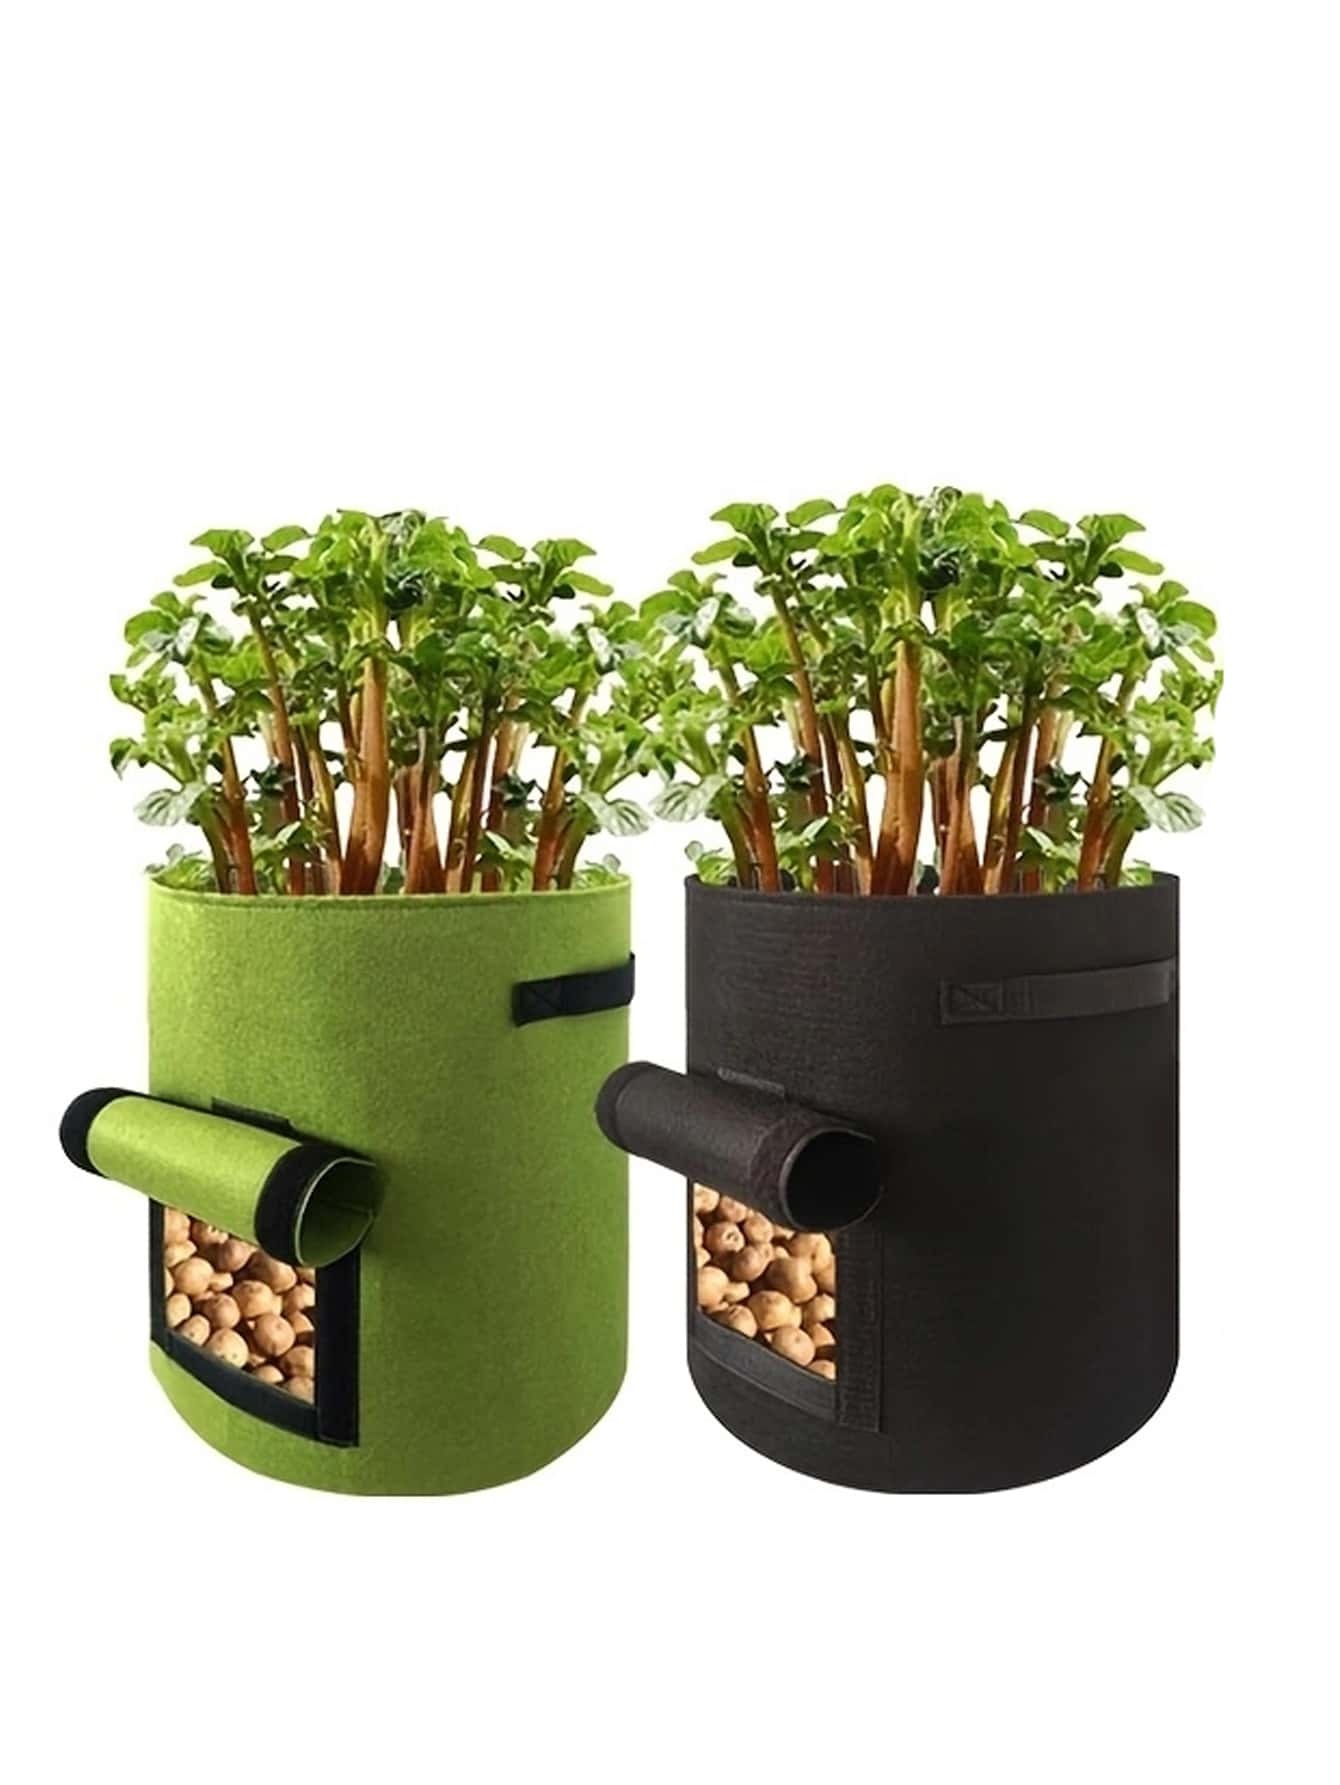 1pc Non-woven Fabric Random Color Grow Bag, Double Handle Plant Grow Bag For Garden